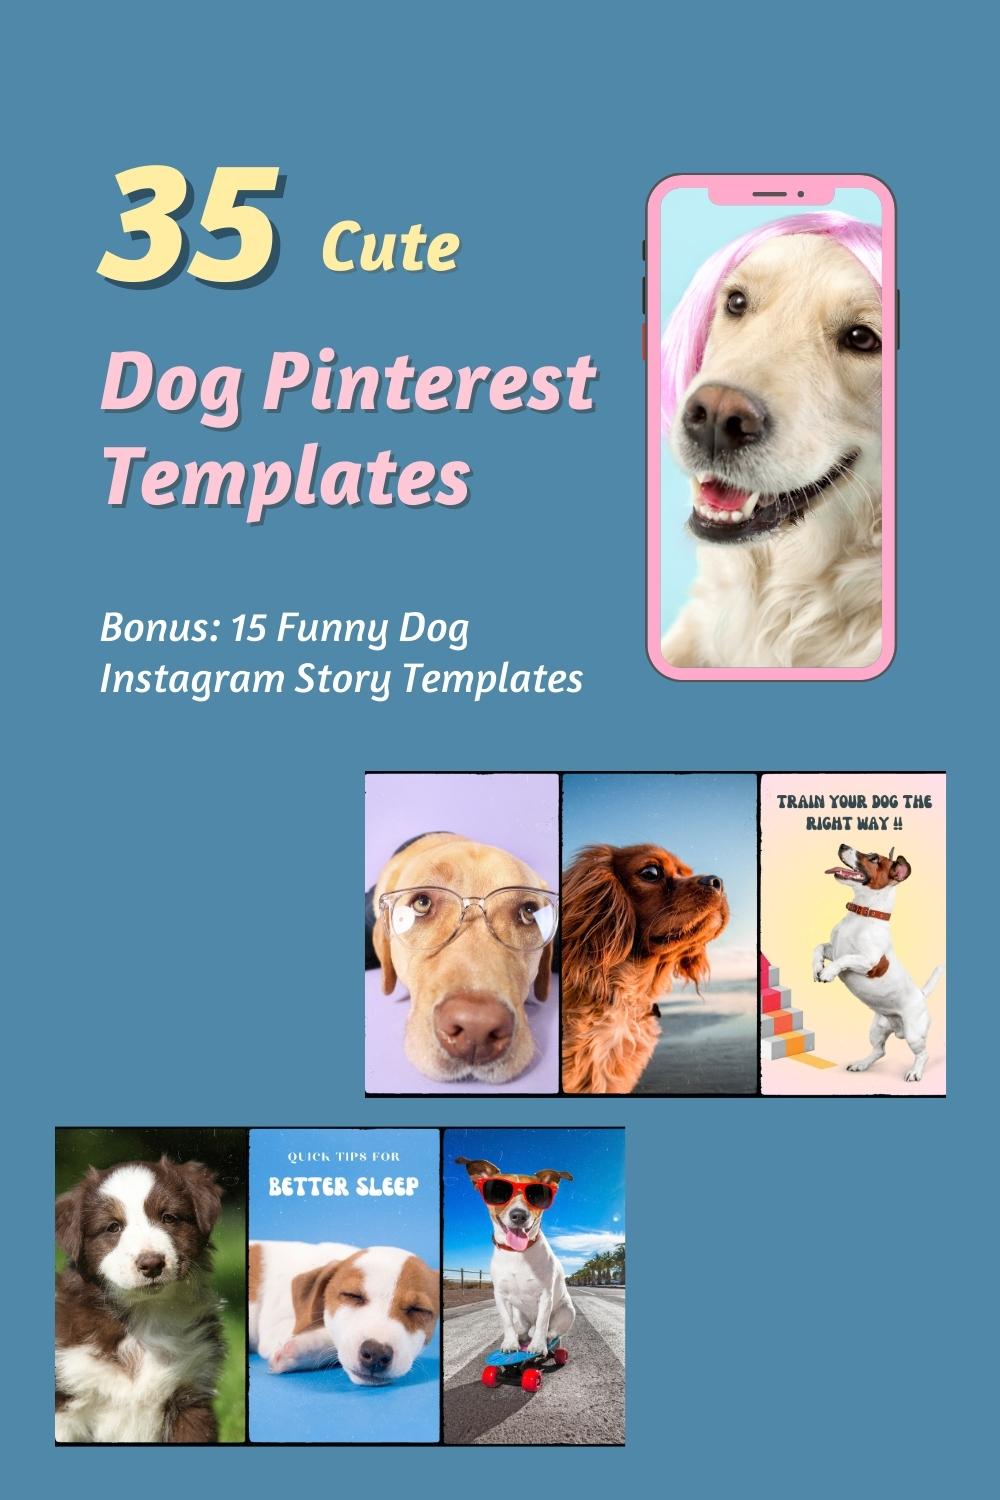 35 Cute Dog Pinterest Templates - Mega Bundle pinterest preview image.